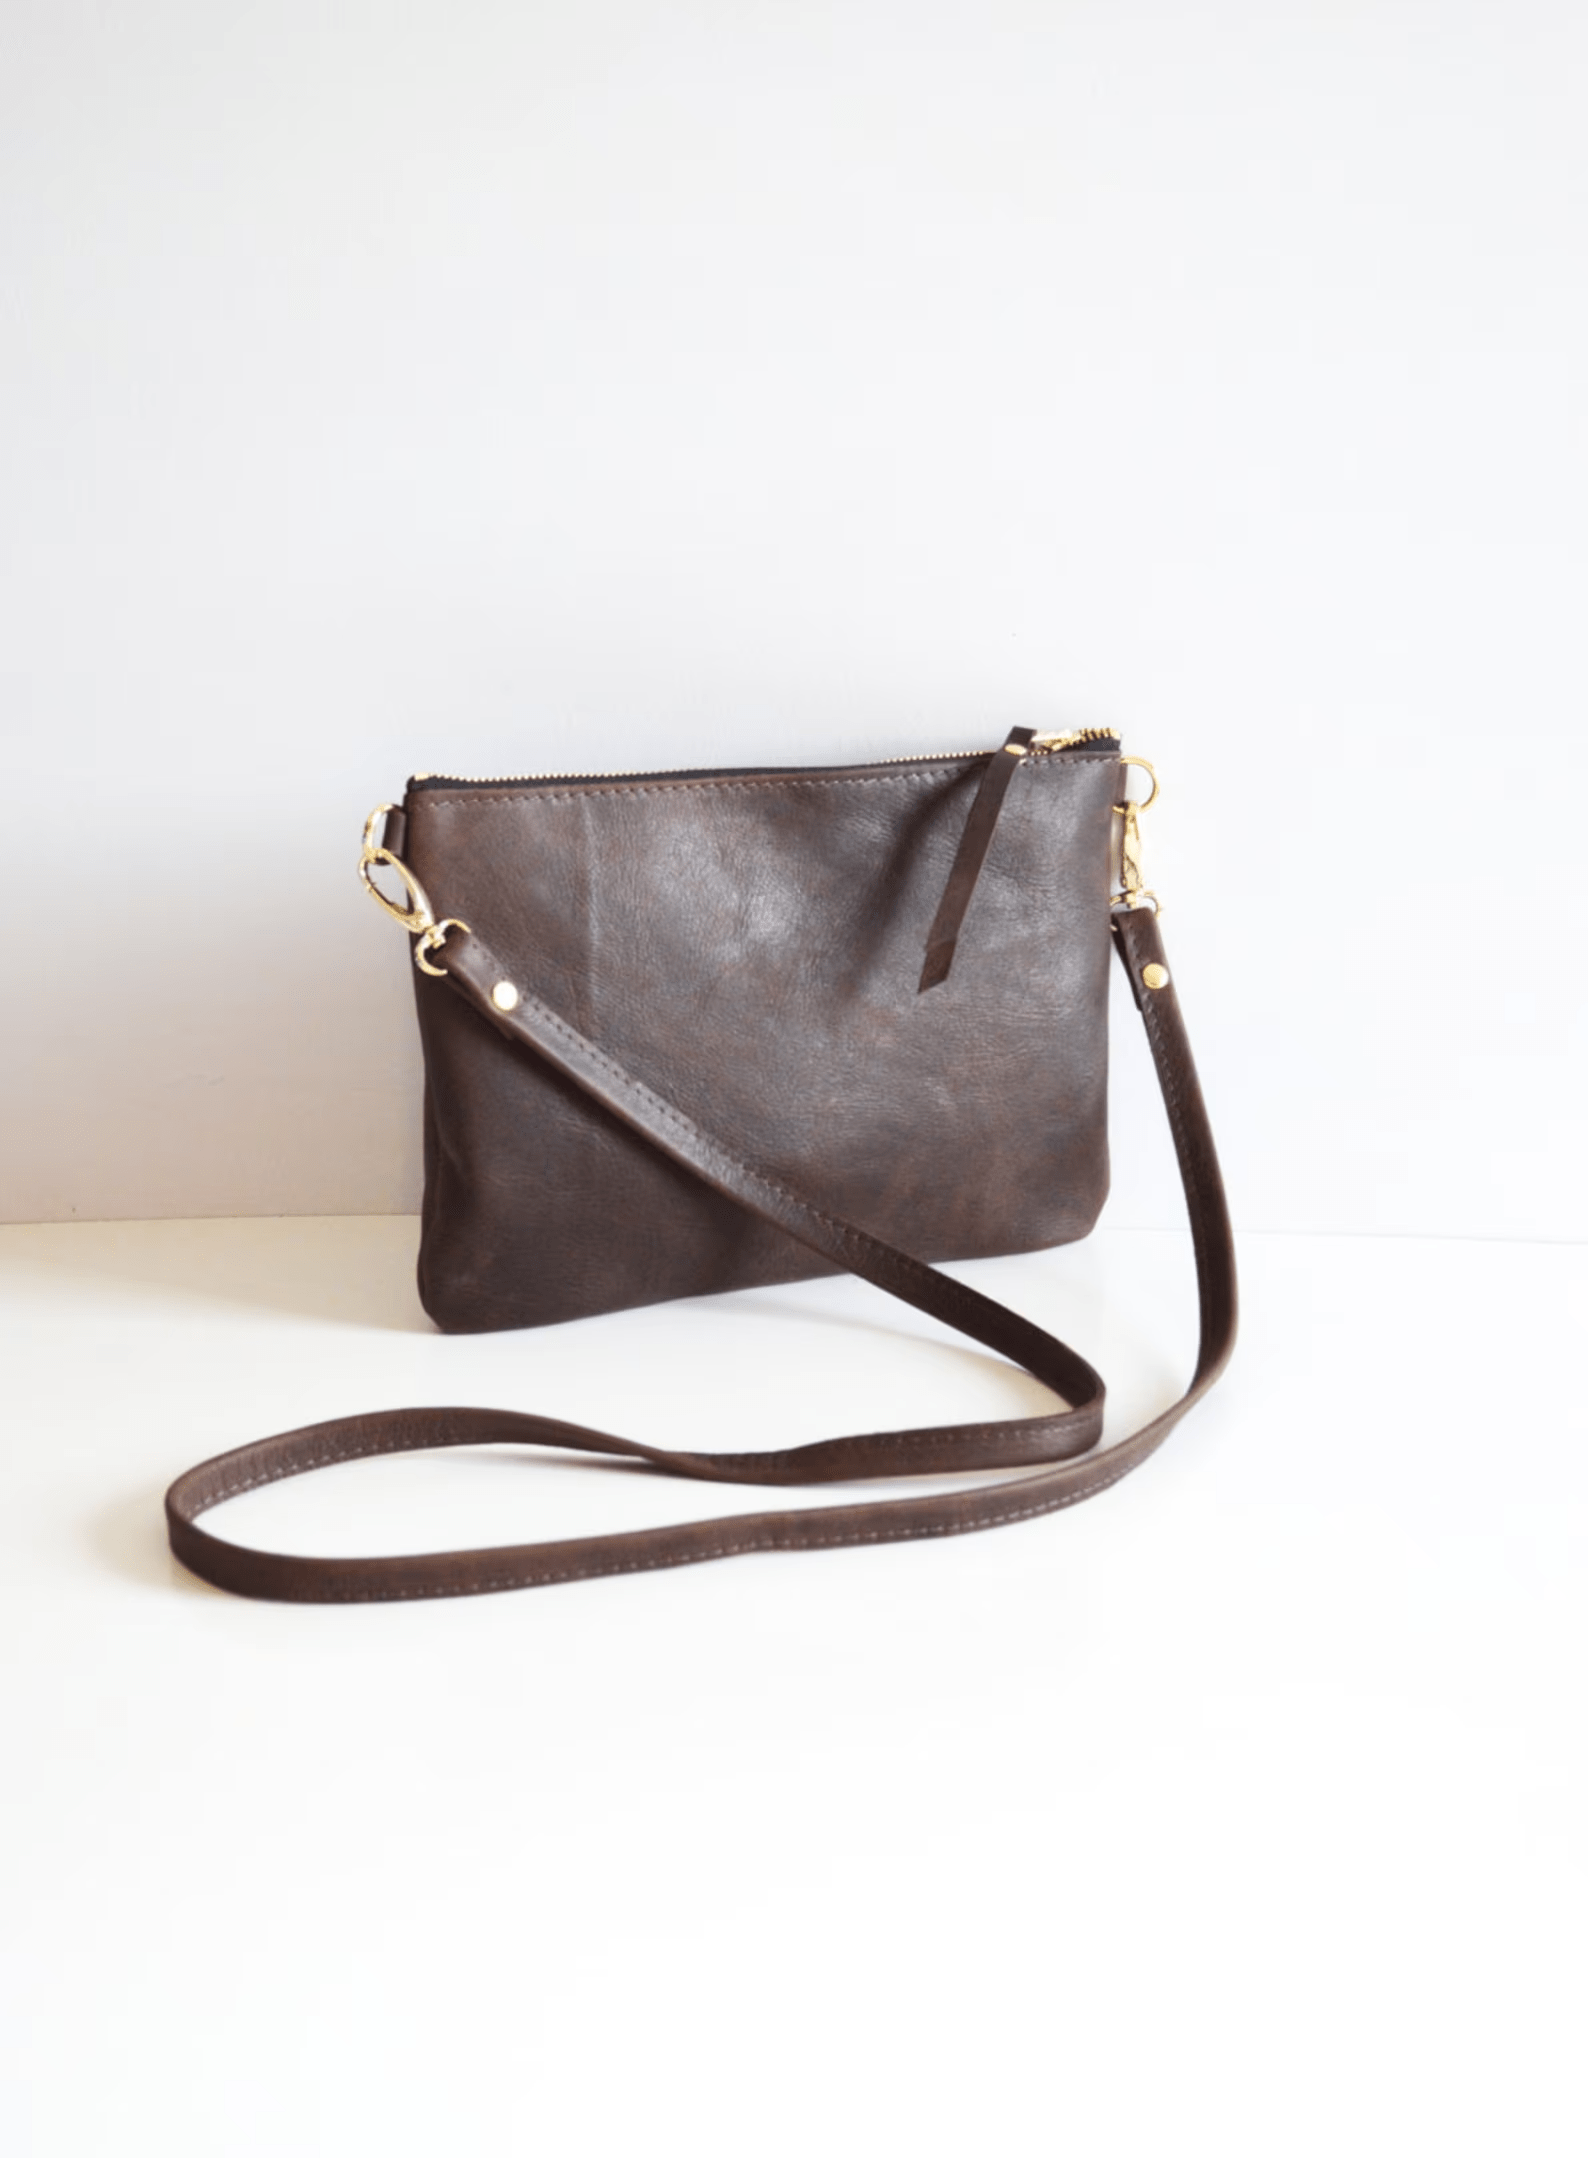 Kinnoti 100% Genuine Leather Sling Bag For Women